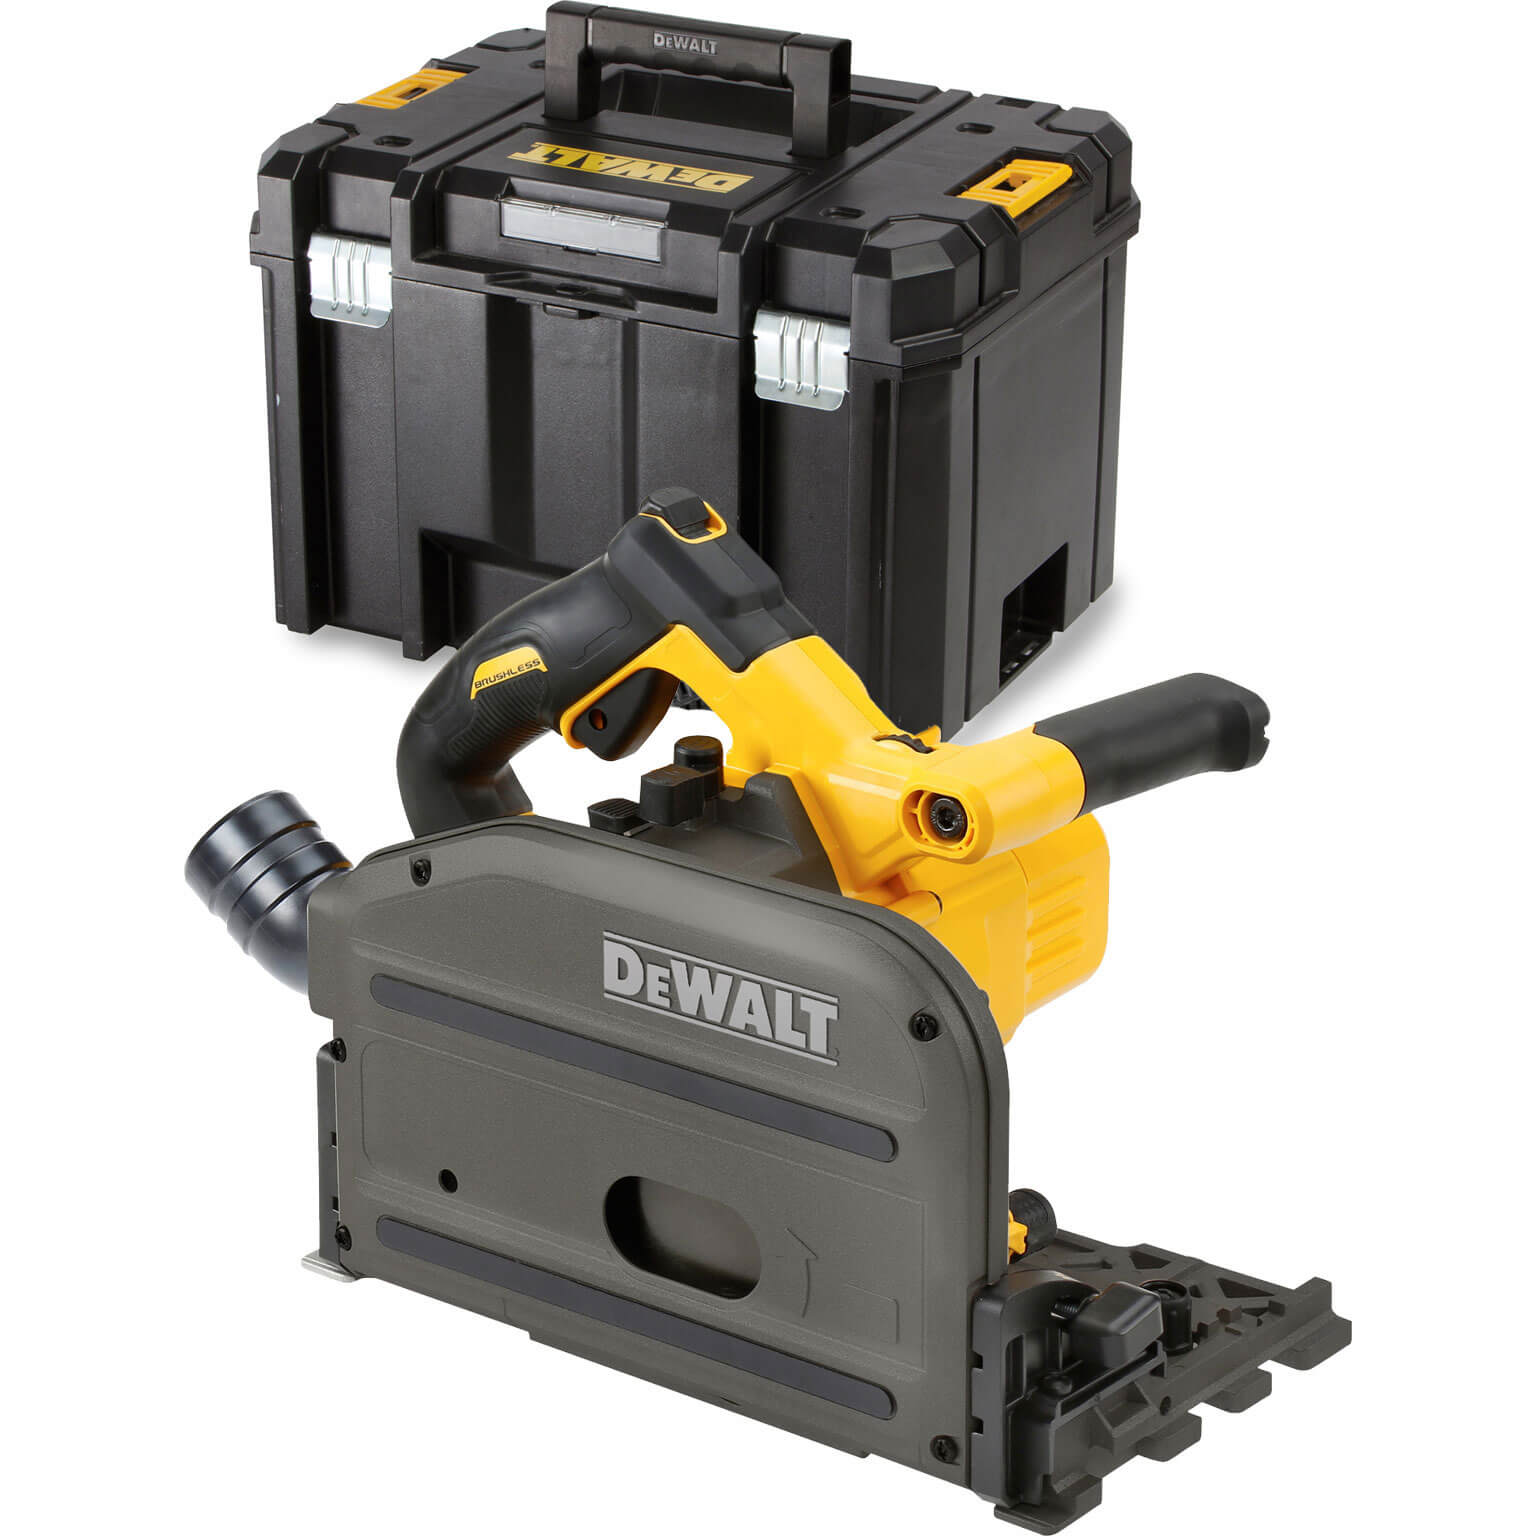 Image of DeWalt DCS520 54v XR Cordless Brushless FLEXVOLT Plunge Saw 165mm No Batteries No Charger Case